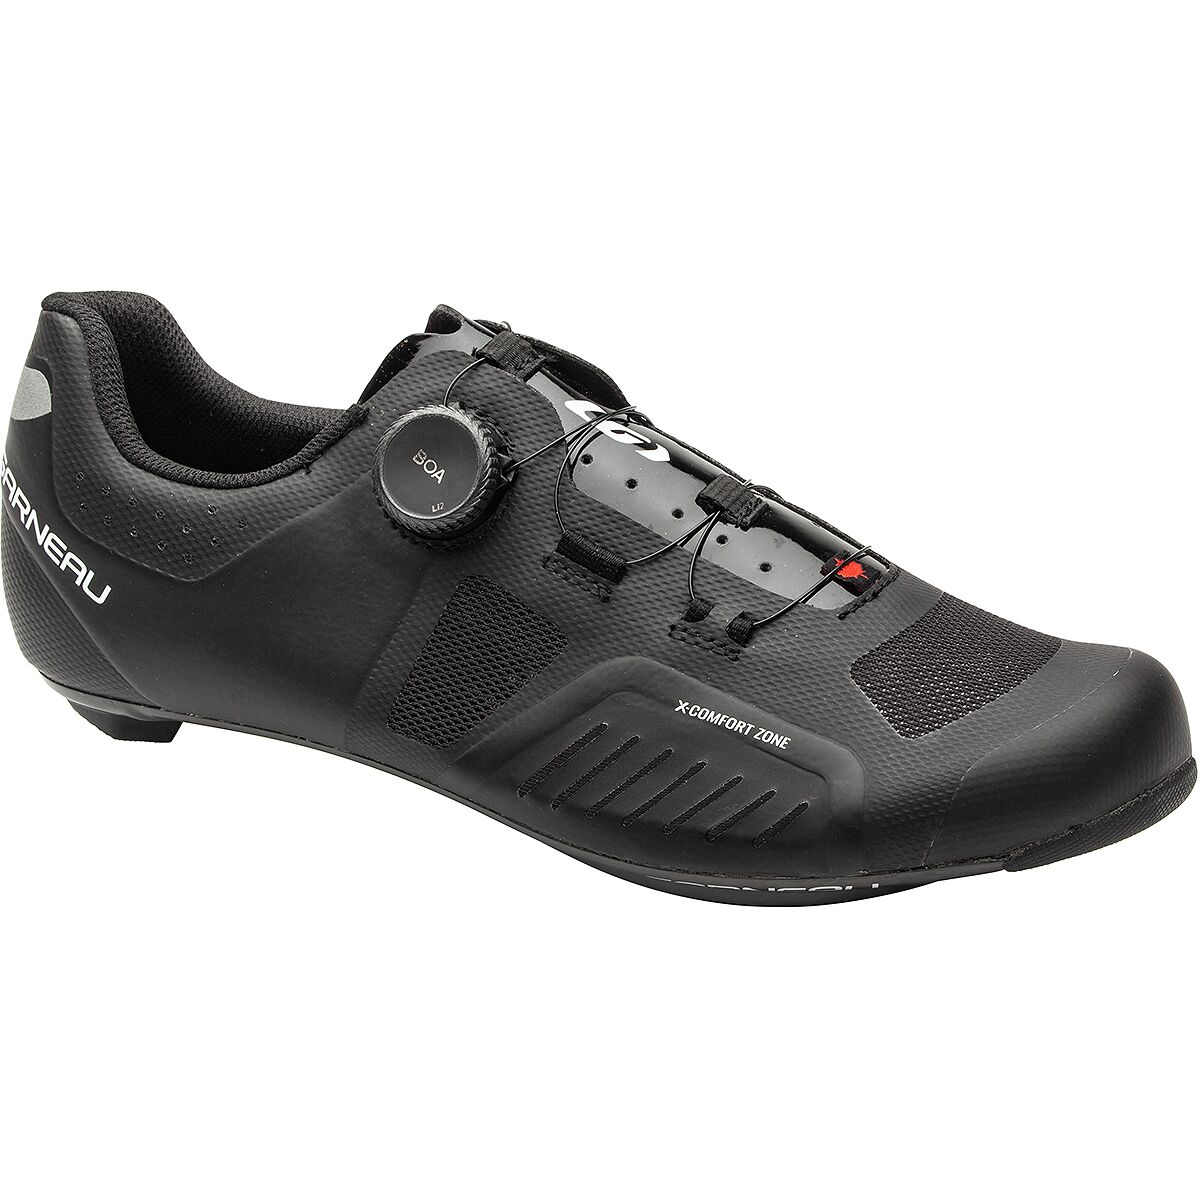 Louis Garneau Carbon XY Cycling Shoe - Men's